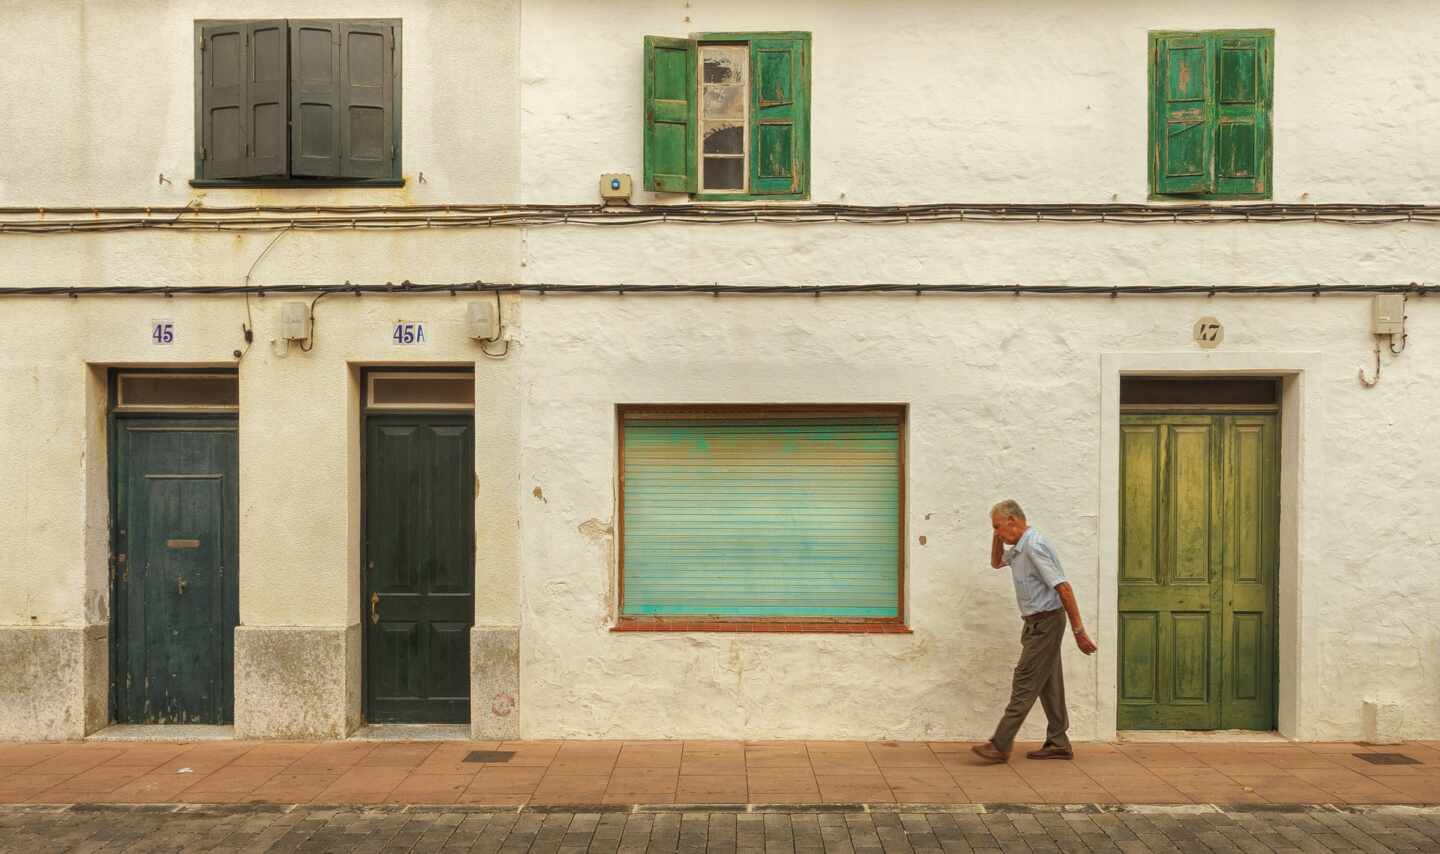 Un hombre de edad avanzada pasea frente a unas casas viejas.